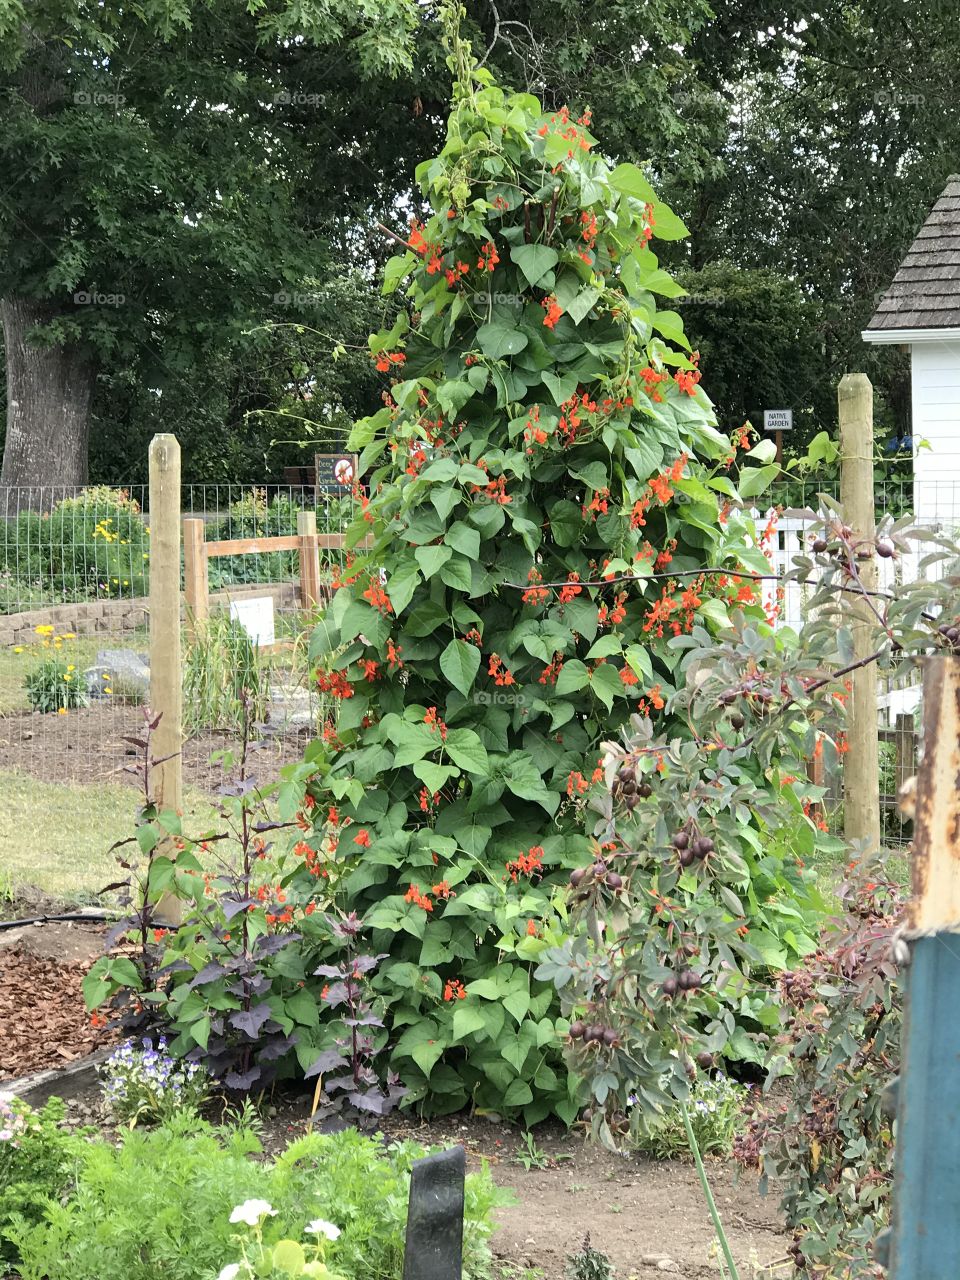 Tree full of beans 